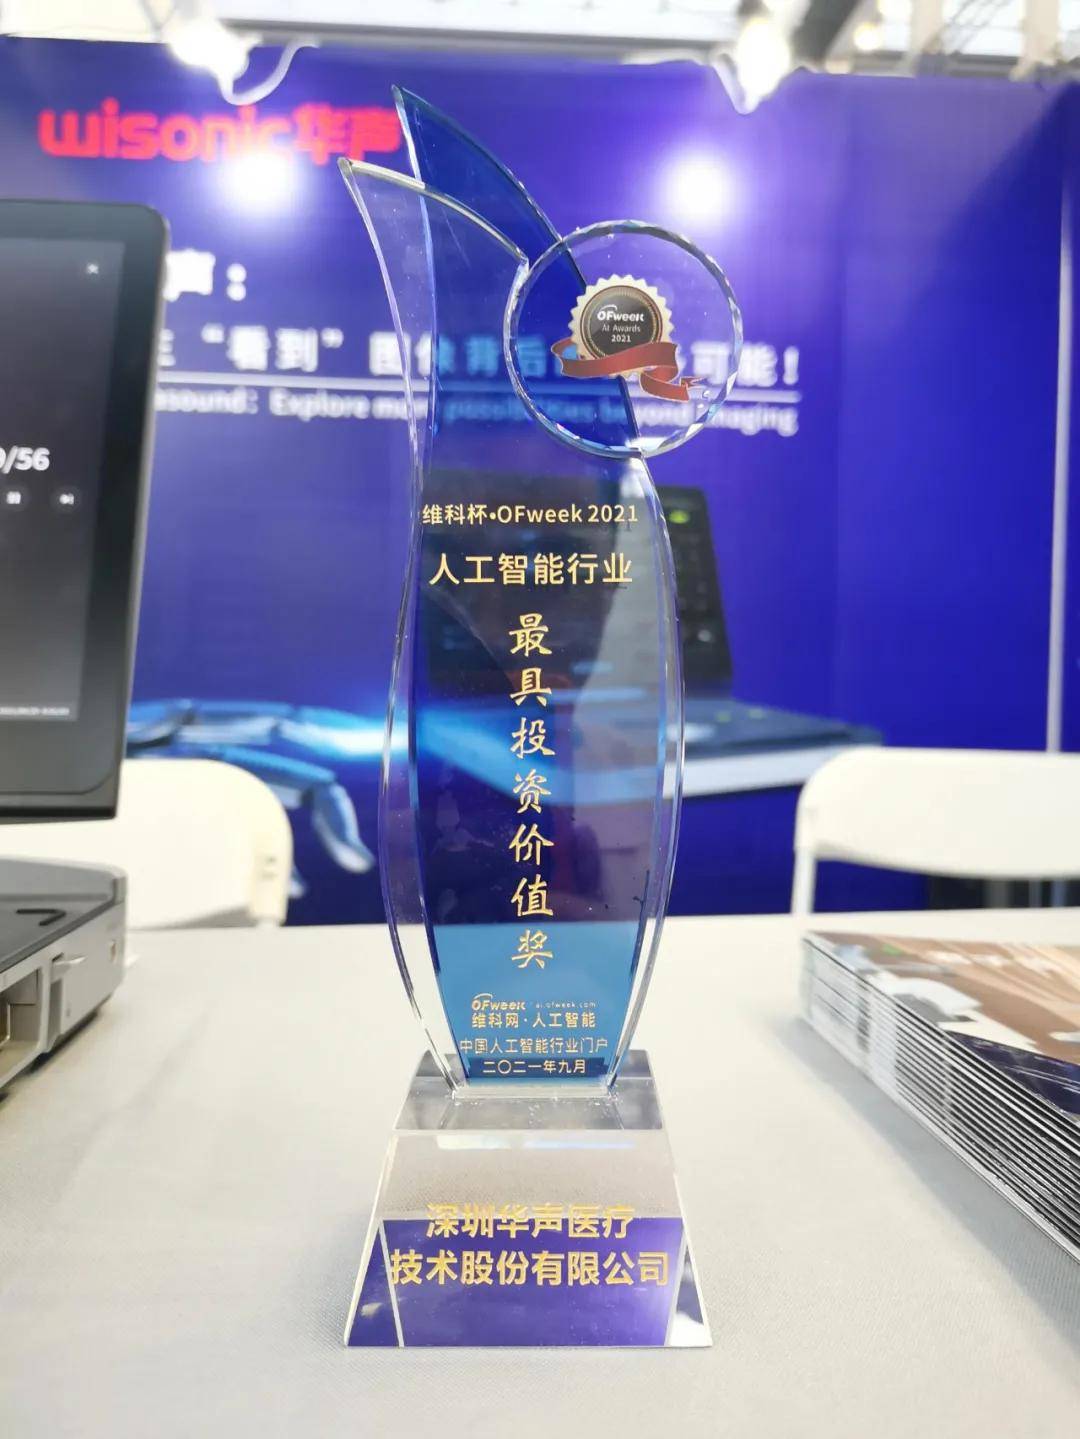 华声荣获“维科杯·OFweek 2021人工智能行业最具投资价值奖”